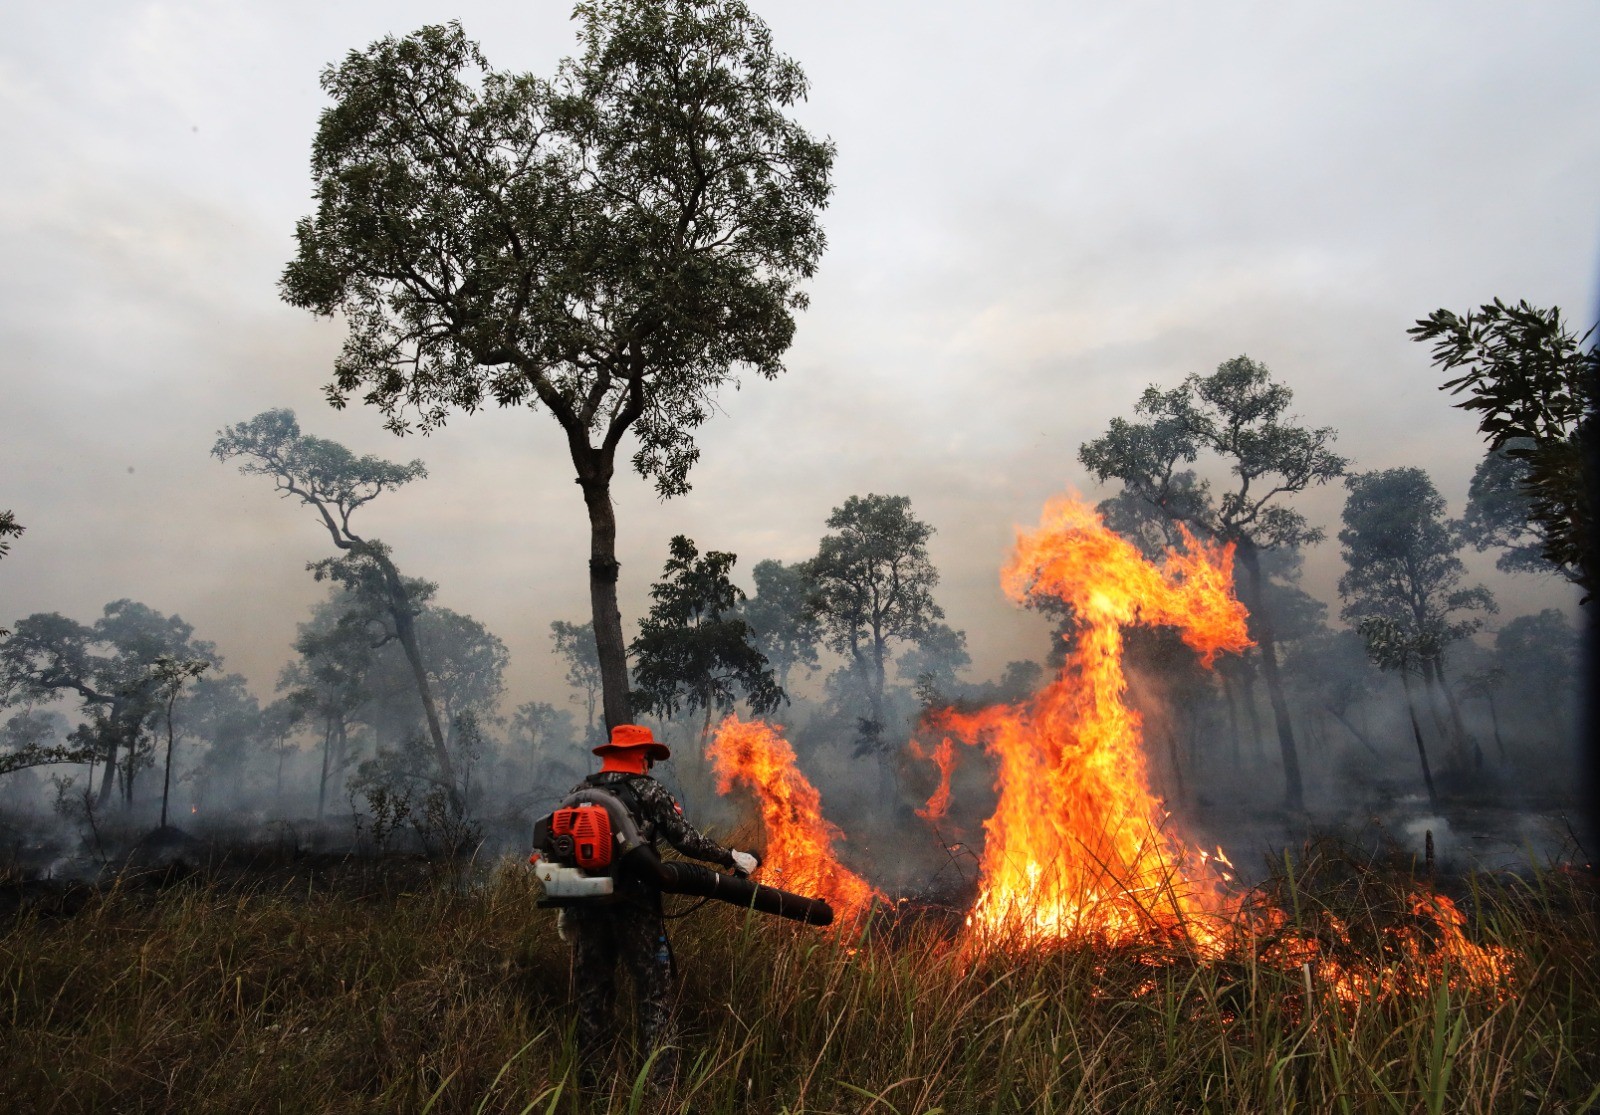 Pantanal: fogo já destruiu área 6 vezes maior que o Rio, e bioma tem pior 1º semestre de série histórica